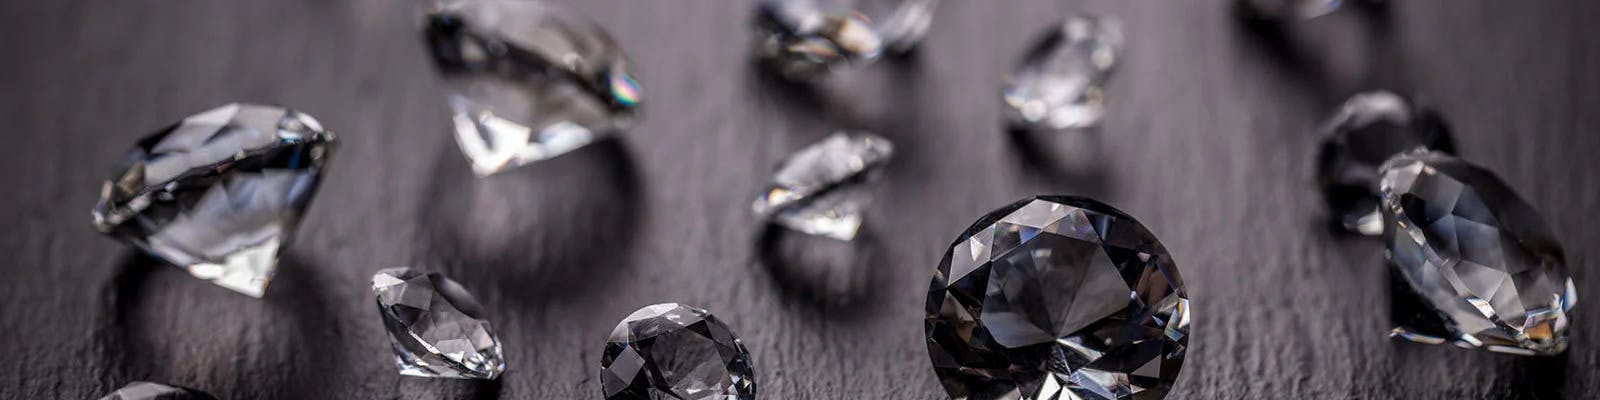 Article: Jewelers’ Repair Pricing Strategies